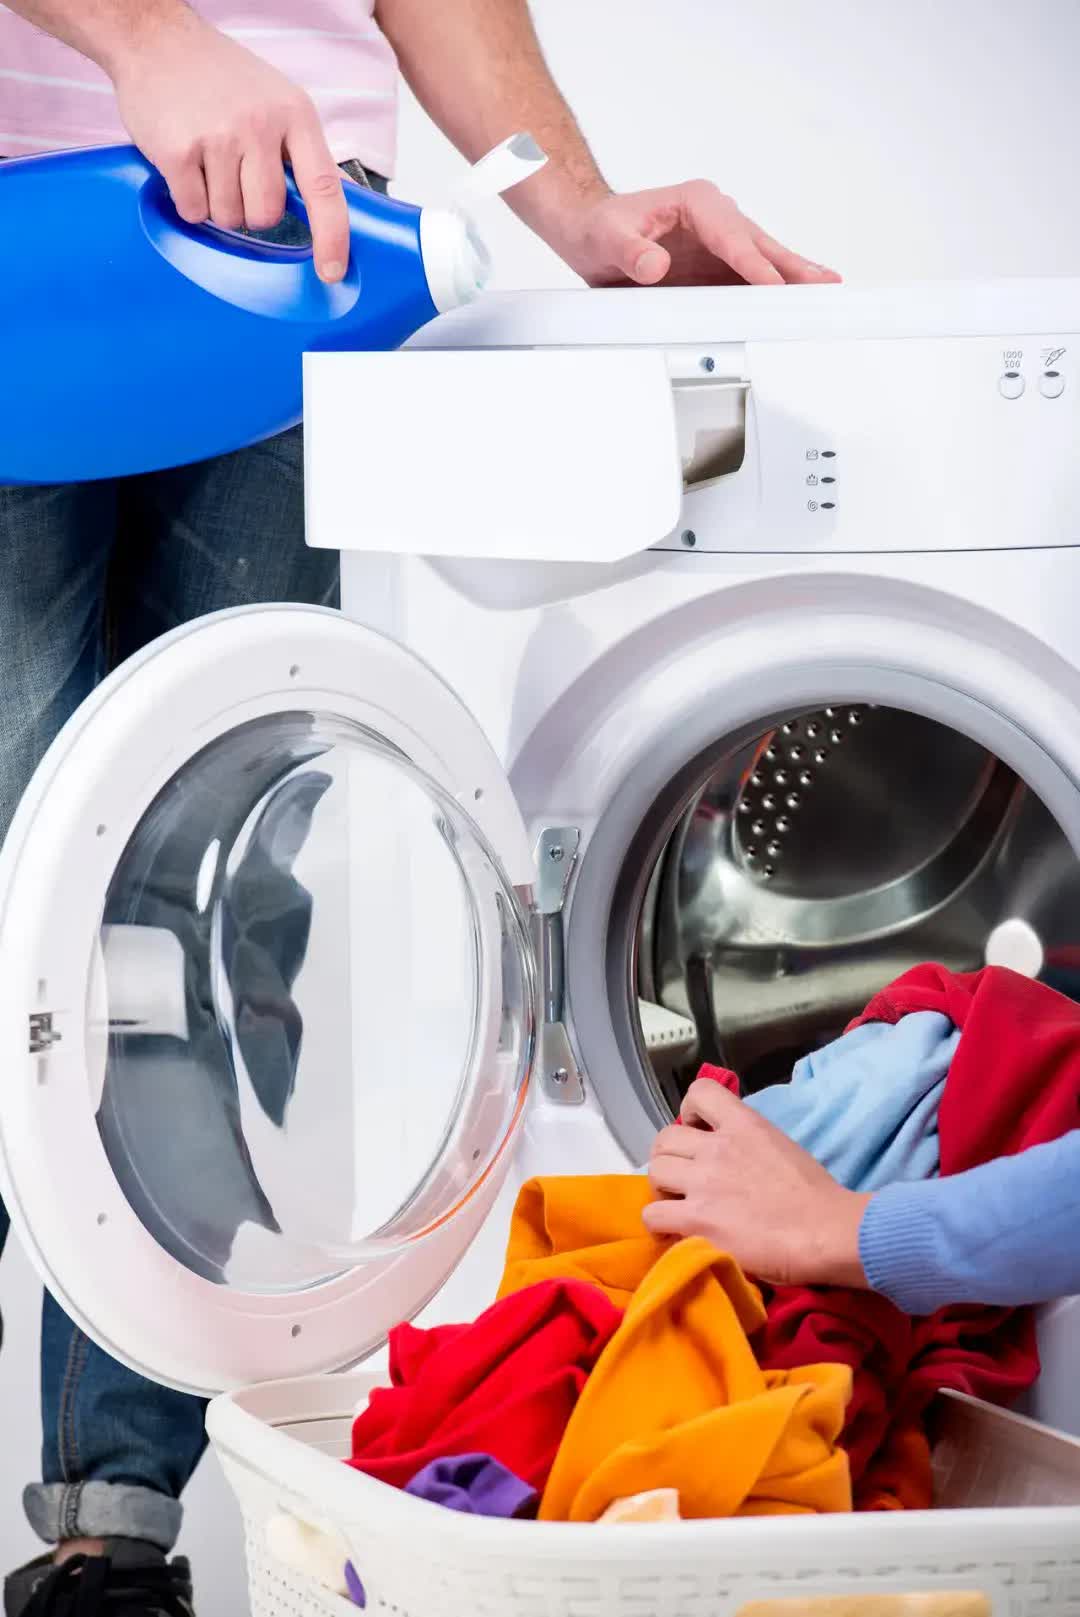 Đừng bao giờ sử dụng máy giặt như thế này, càng giặt quần áo sẽ càng bẩn và bạn còn có thể mắc các bệnh về da - Ảnh 5.